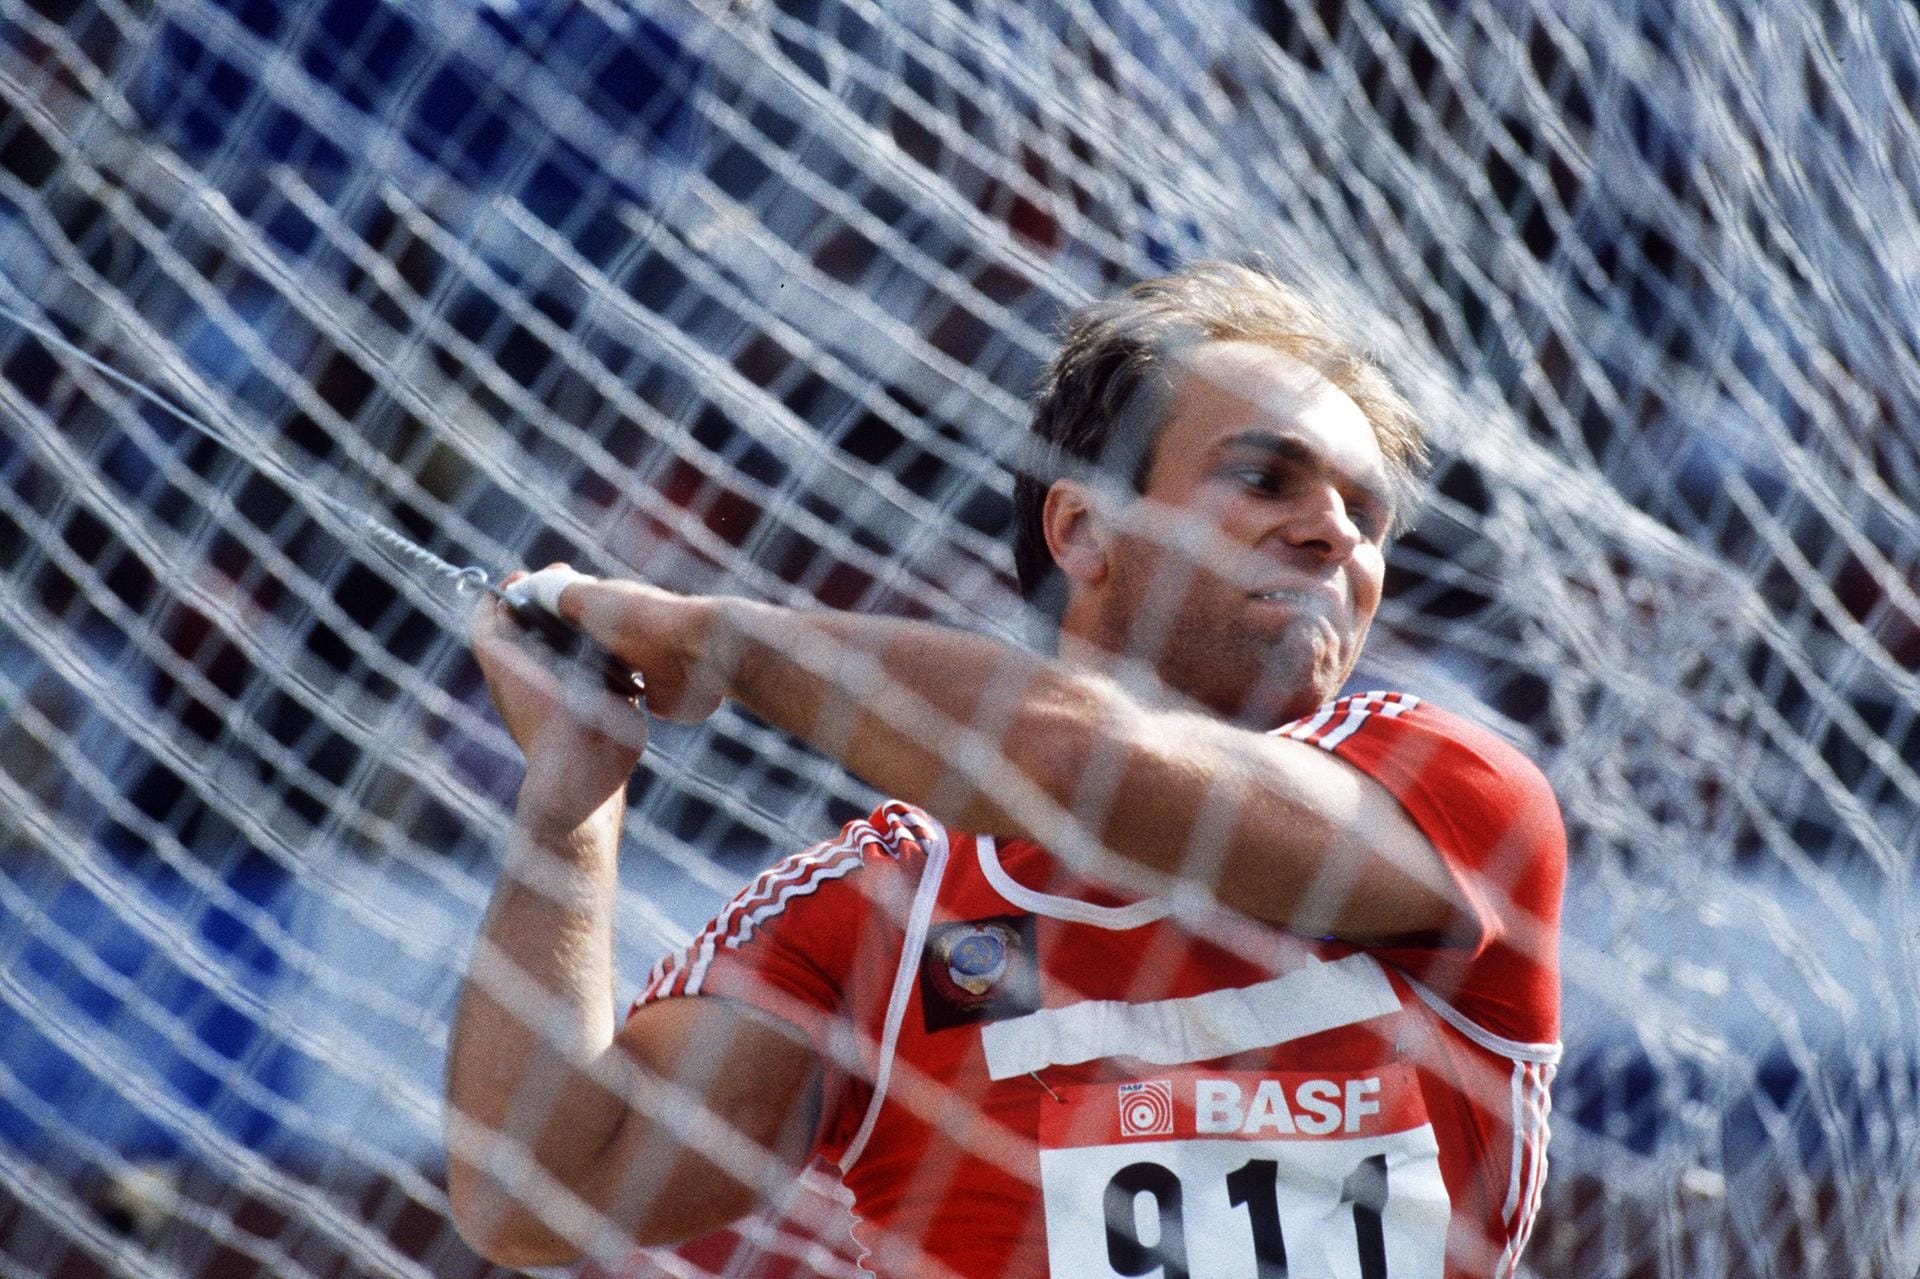 14. September: Hammerwurf-Olympiasieger Juri Sedych ist tot. Der Goldmedaillengewinner der Sommerspiele von 1976 und 1980 stirbt im Alter von 66 Jahren. Sedychs 86,7-m-Weltrekord von der Europameisterschaft 1986 in Stuttgart ist noch heute gültig.